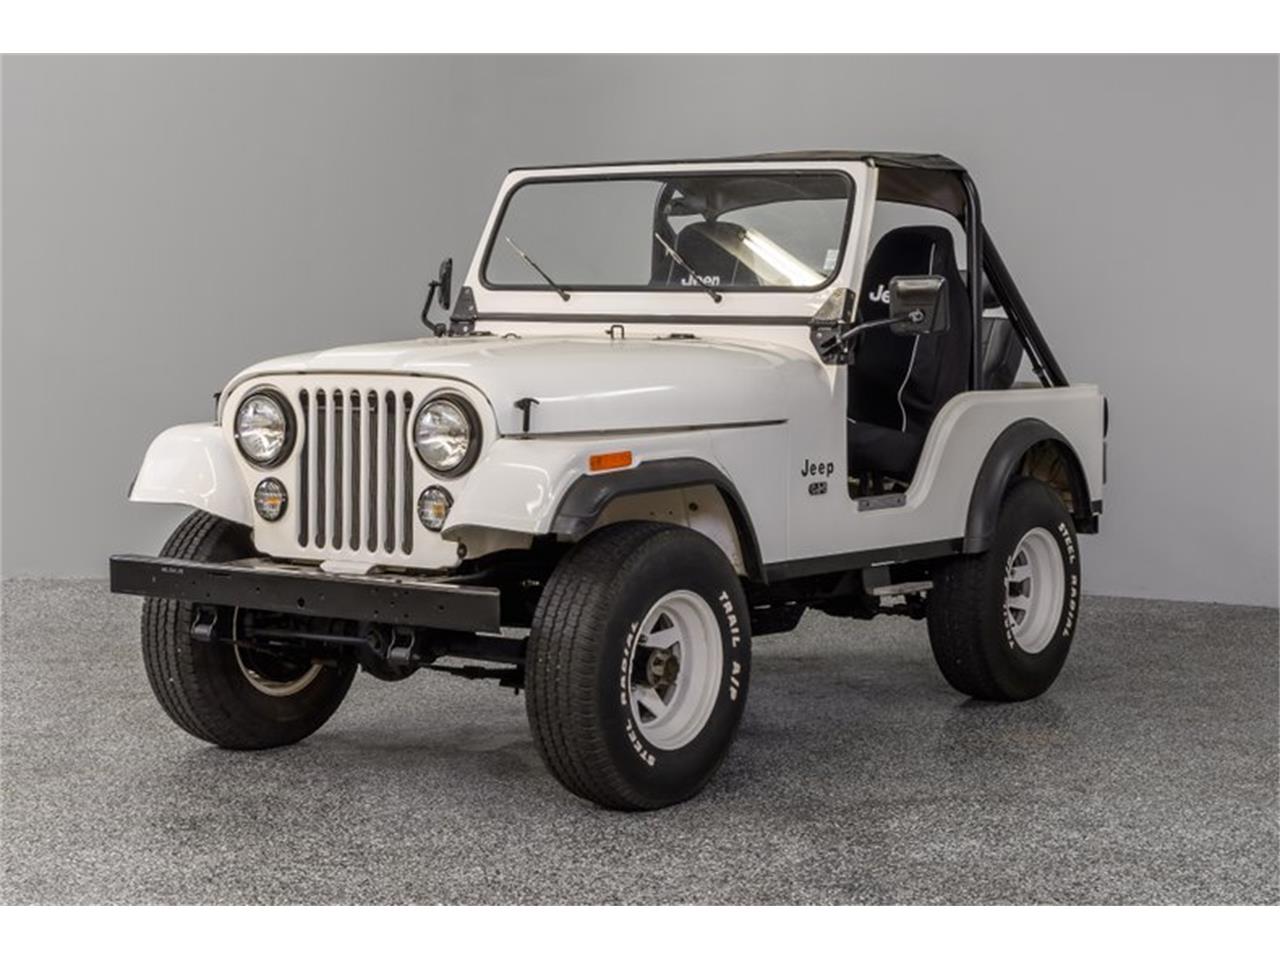 For Sale: 1977 Jeep CJ in Concord, North Carolina.